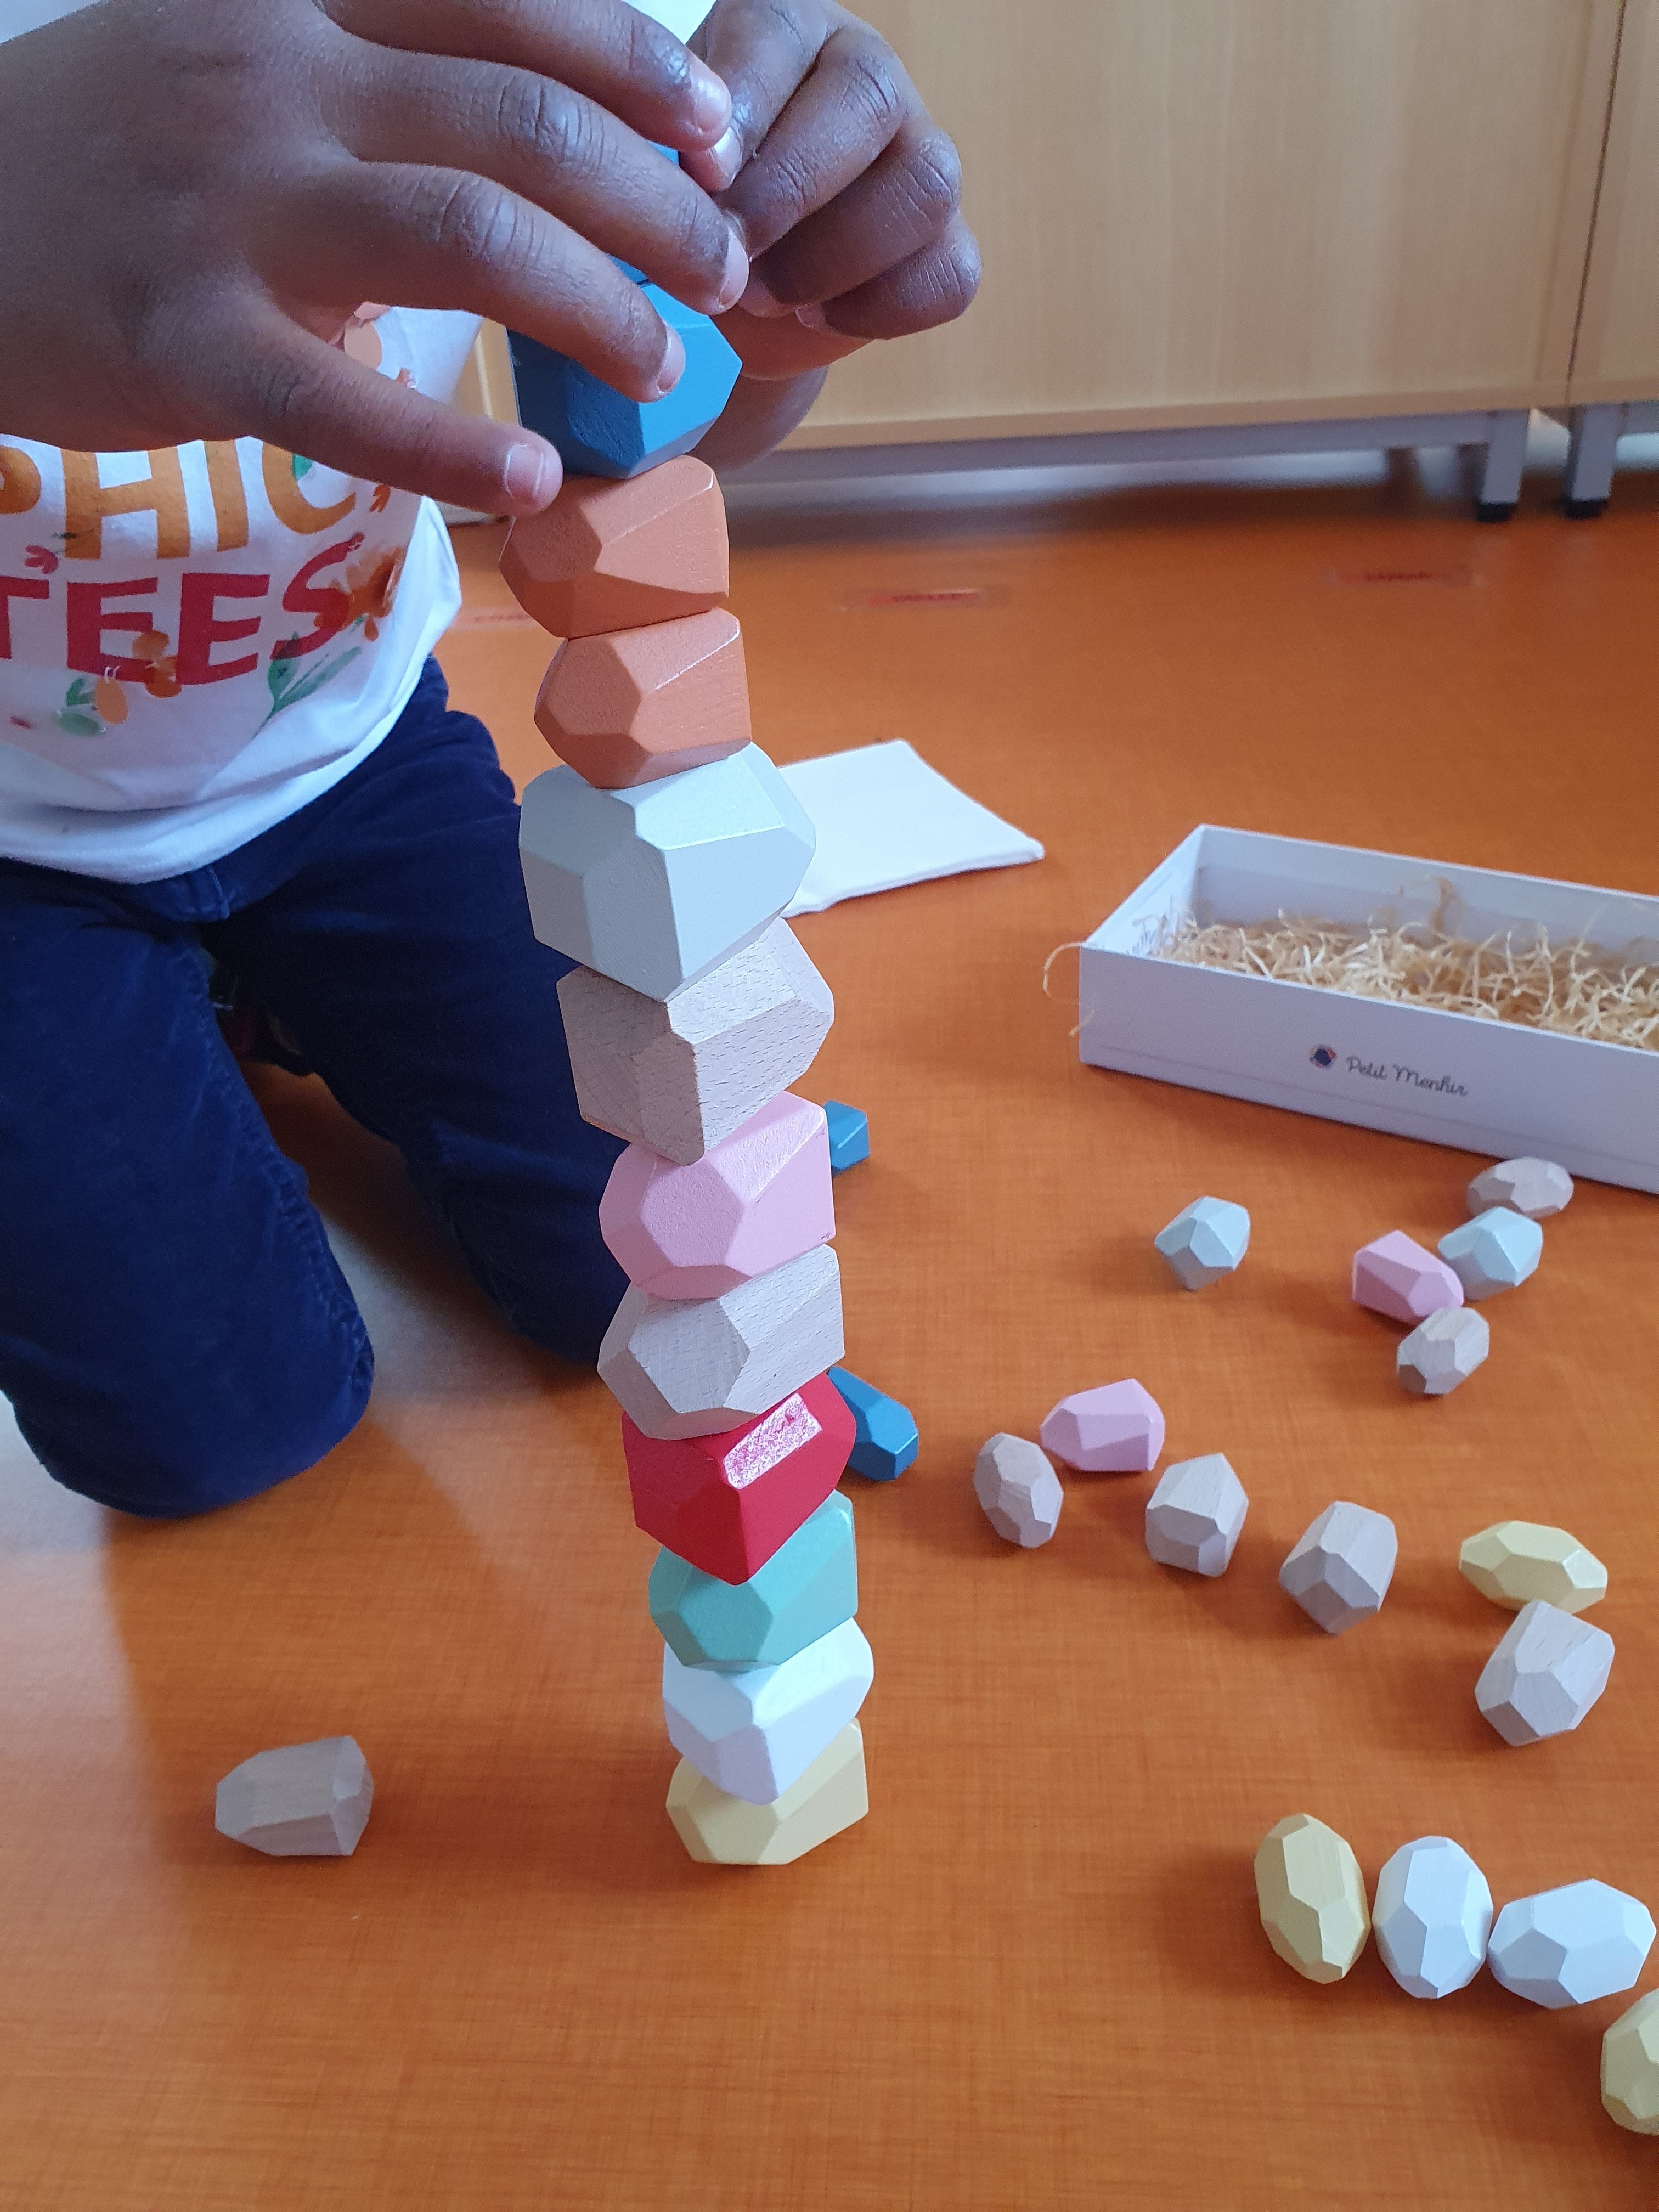 Petit Menhir™ Official  Montessori Wooden Educational Game